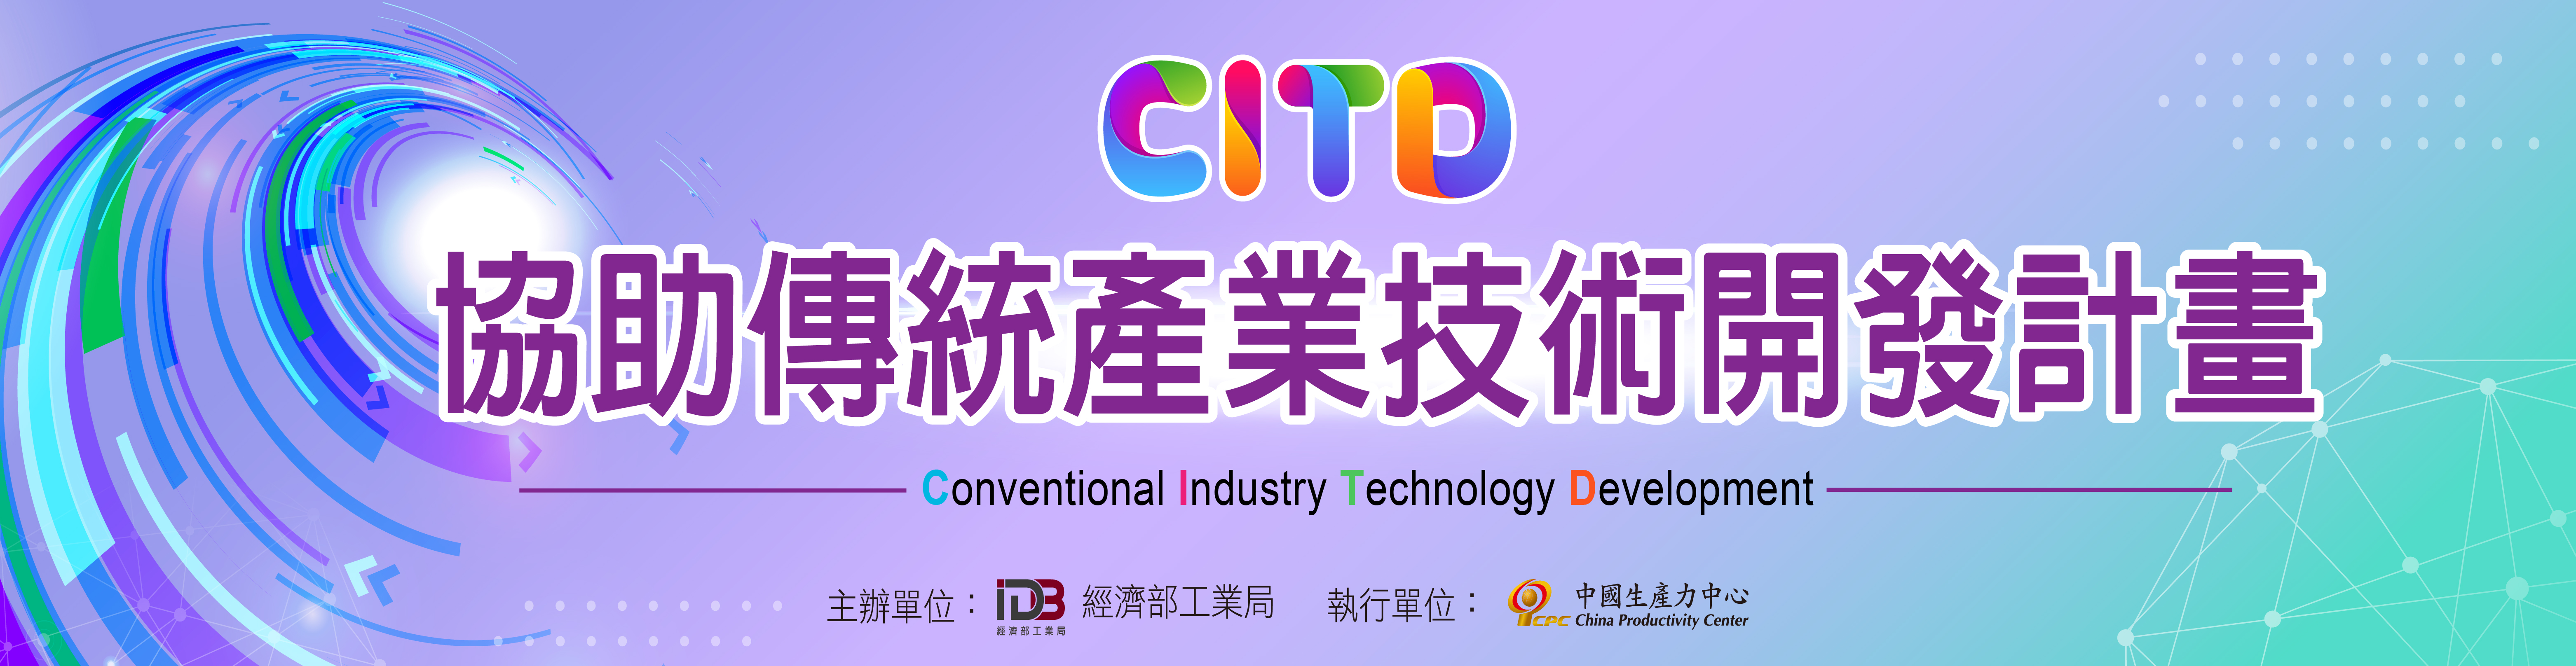 CITD協助傳統產業技術開發計畫